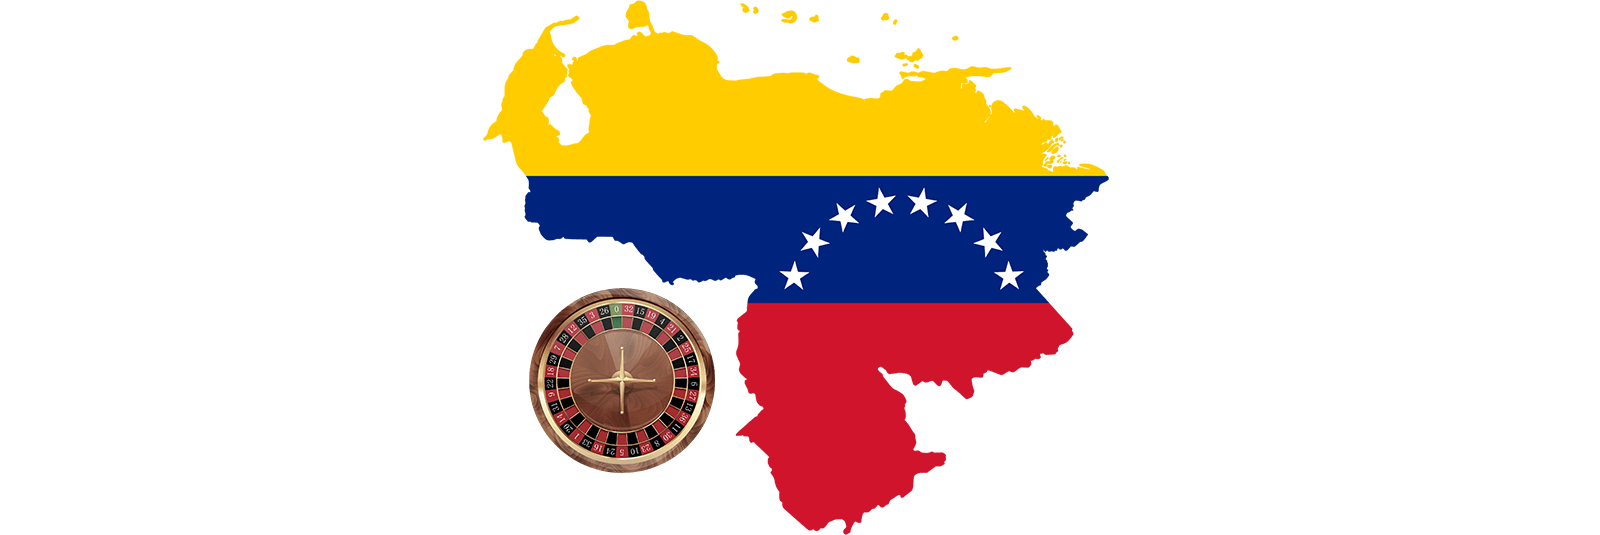 CasinoEnlineaHEX.com   Historia breve de la evolución del juego y casinos en Venezuela